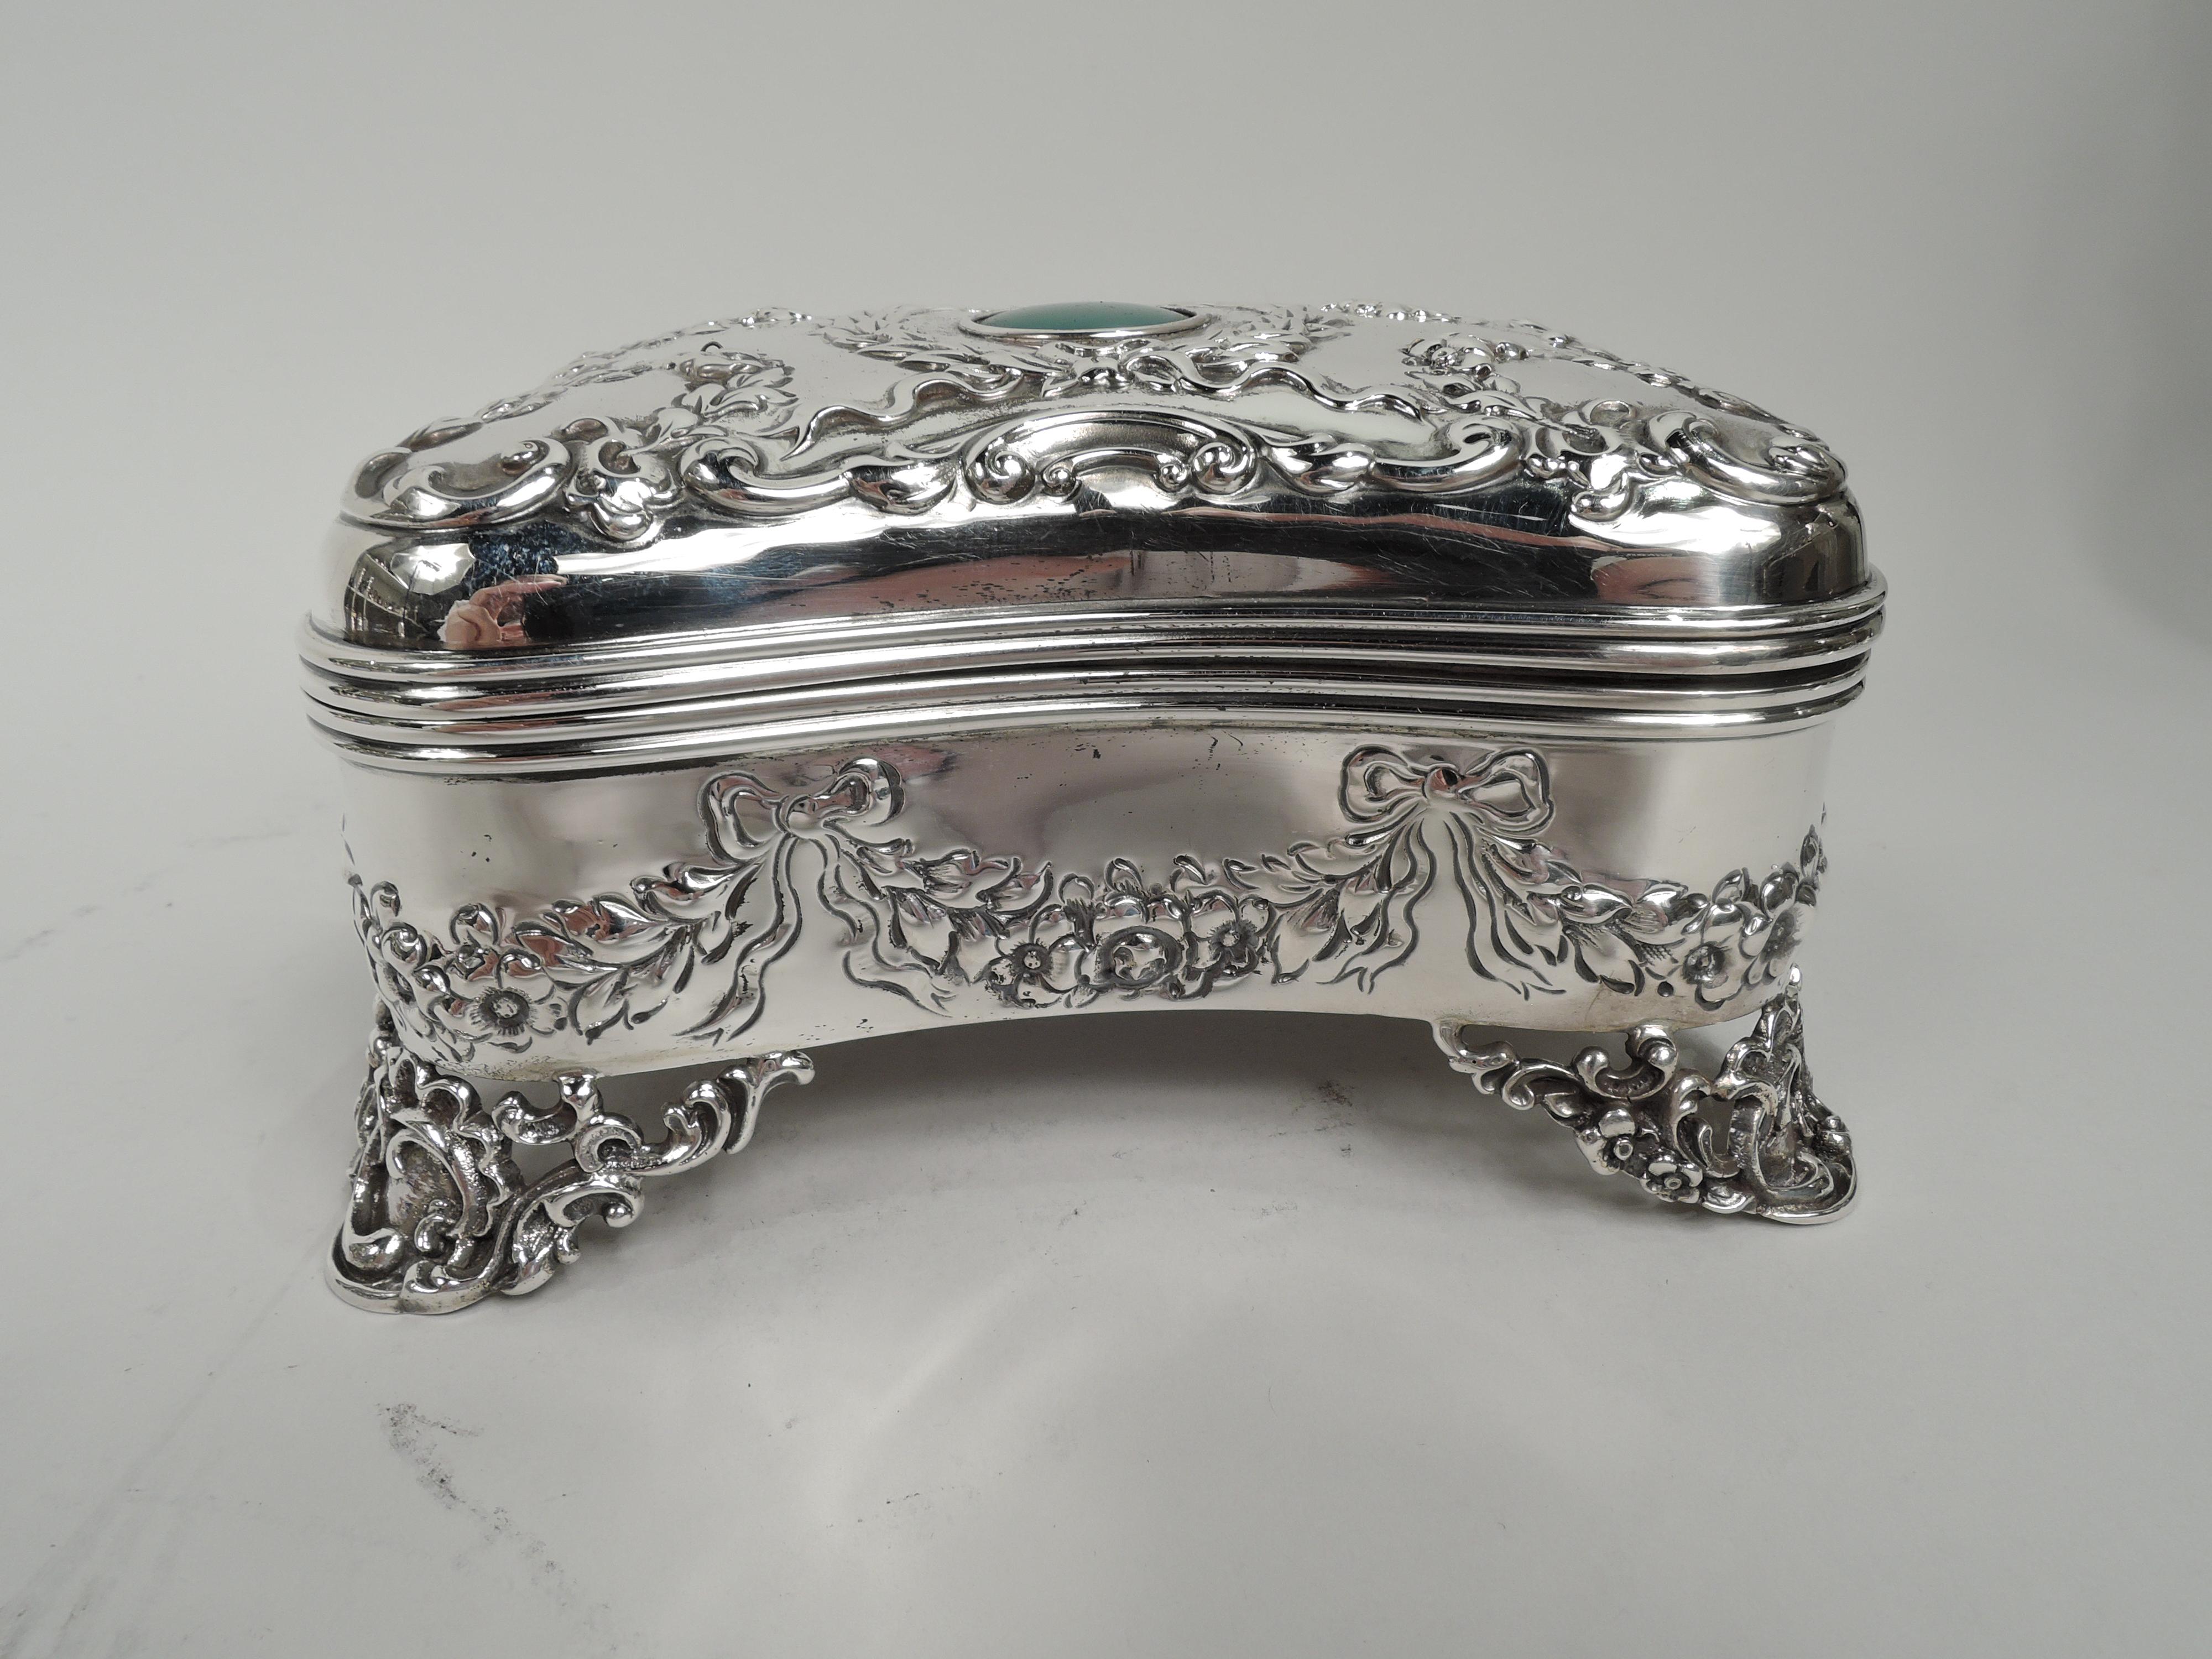 Regency Revival Fancy American Victorian Regency Sterling Silver Jewelry Box